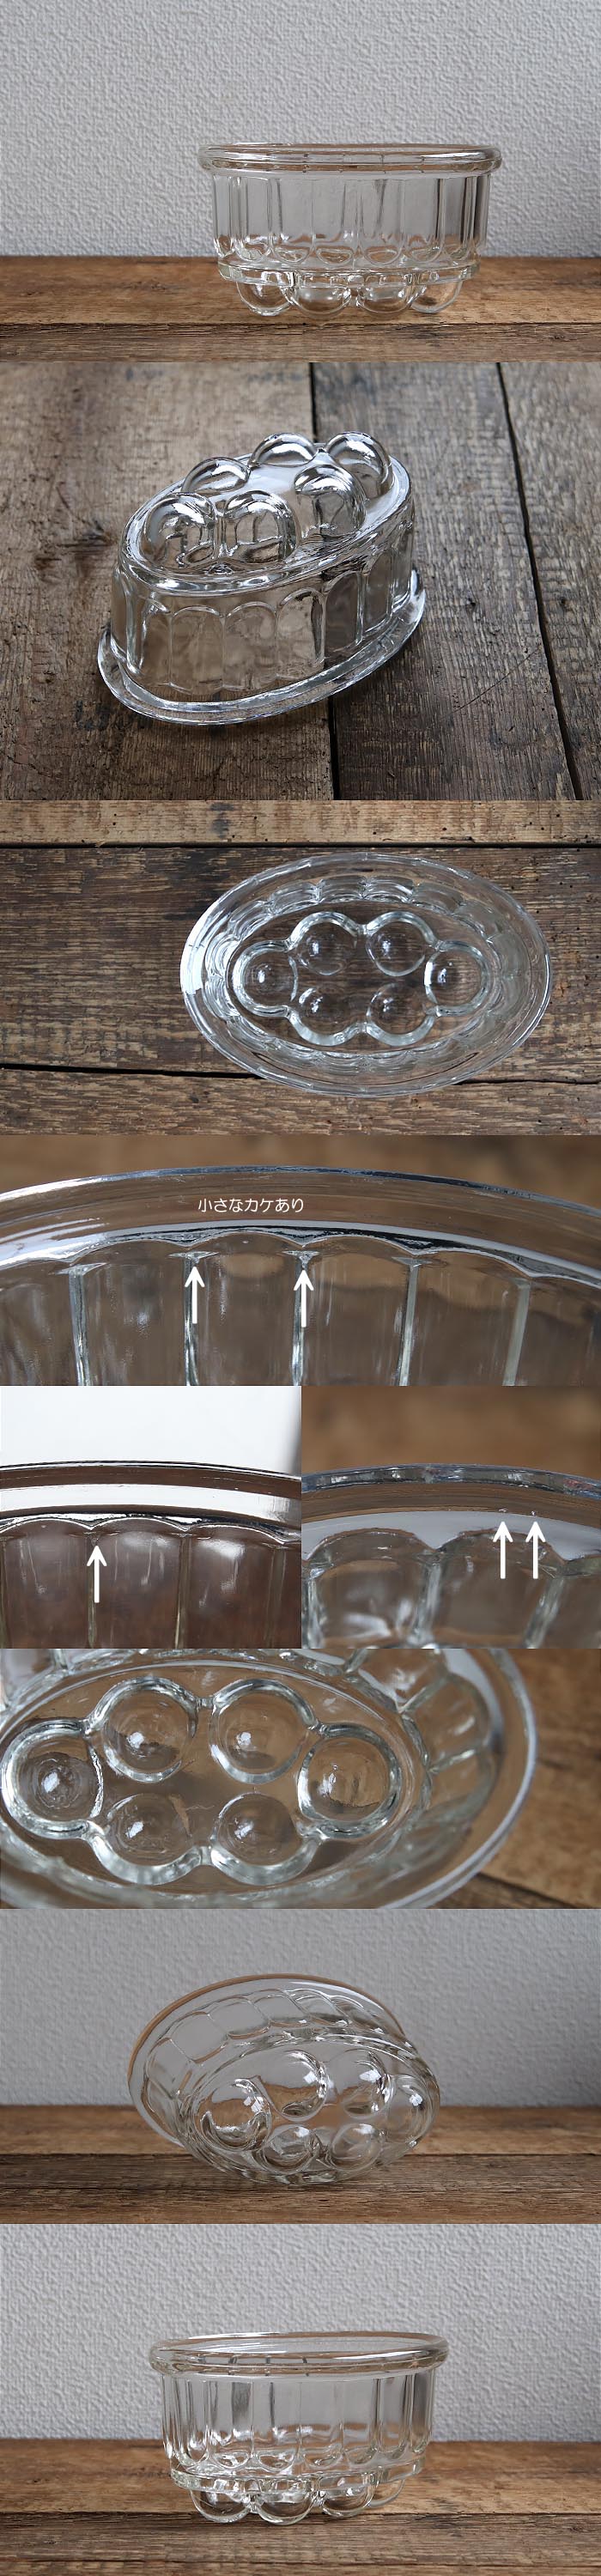 イギリス アンティーク ガラス製ゼリーモールド/キッチン雑貨/プレスガラス/菓子型/英国【花器や小物入れにどうぞ】T-145